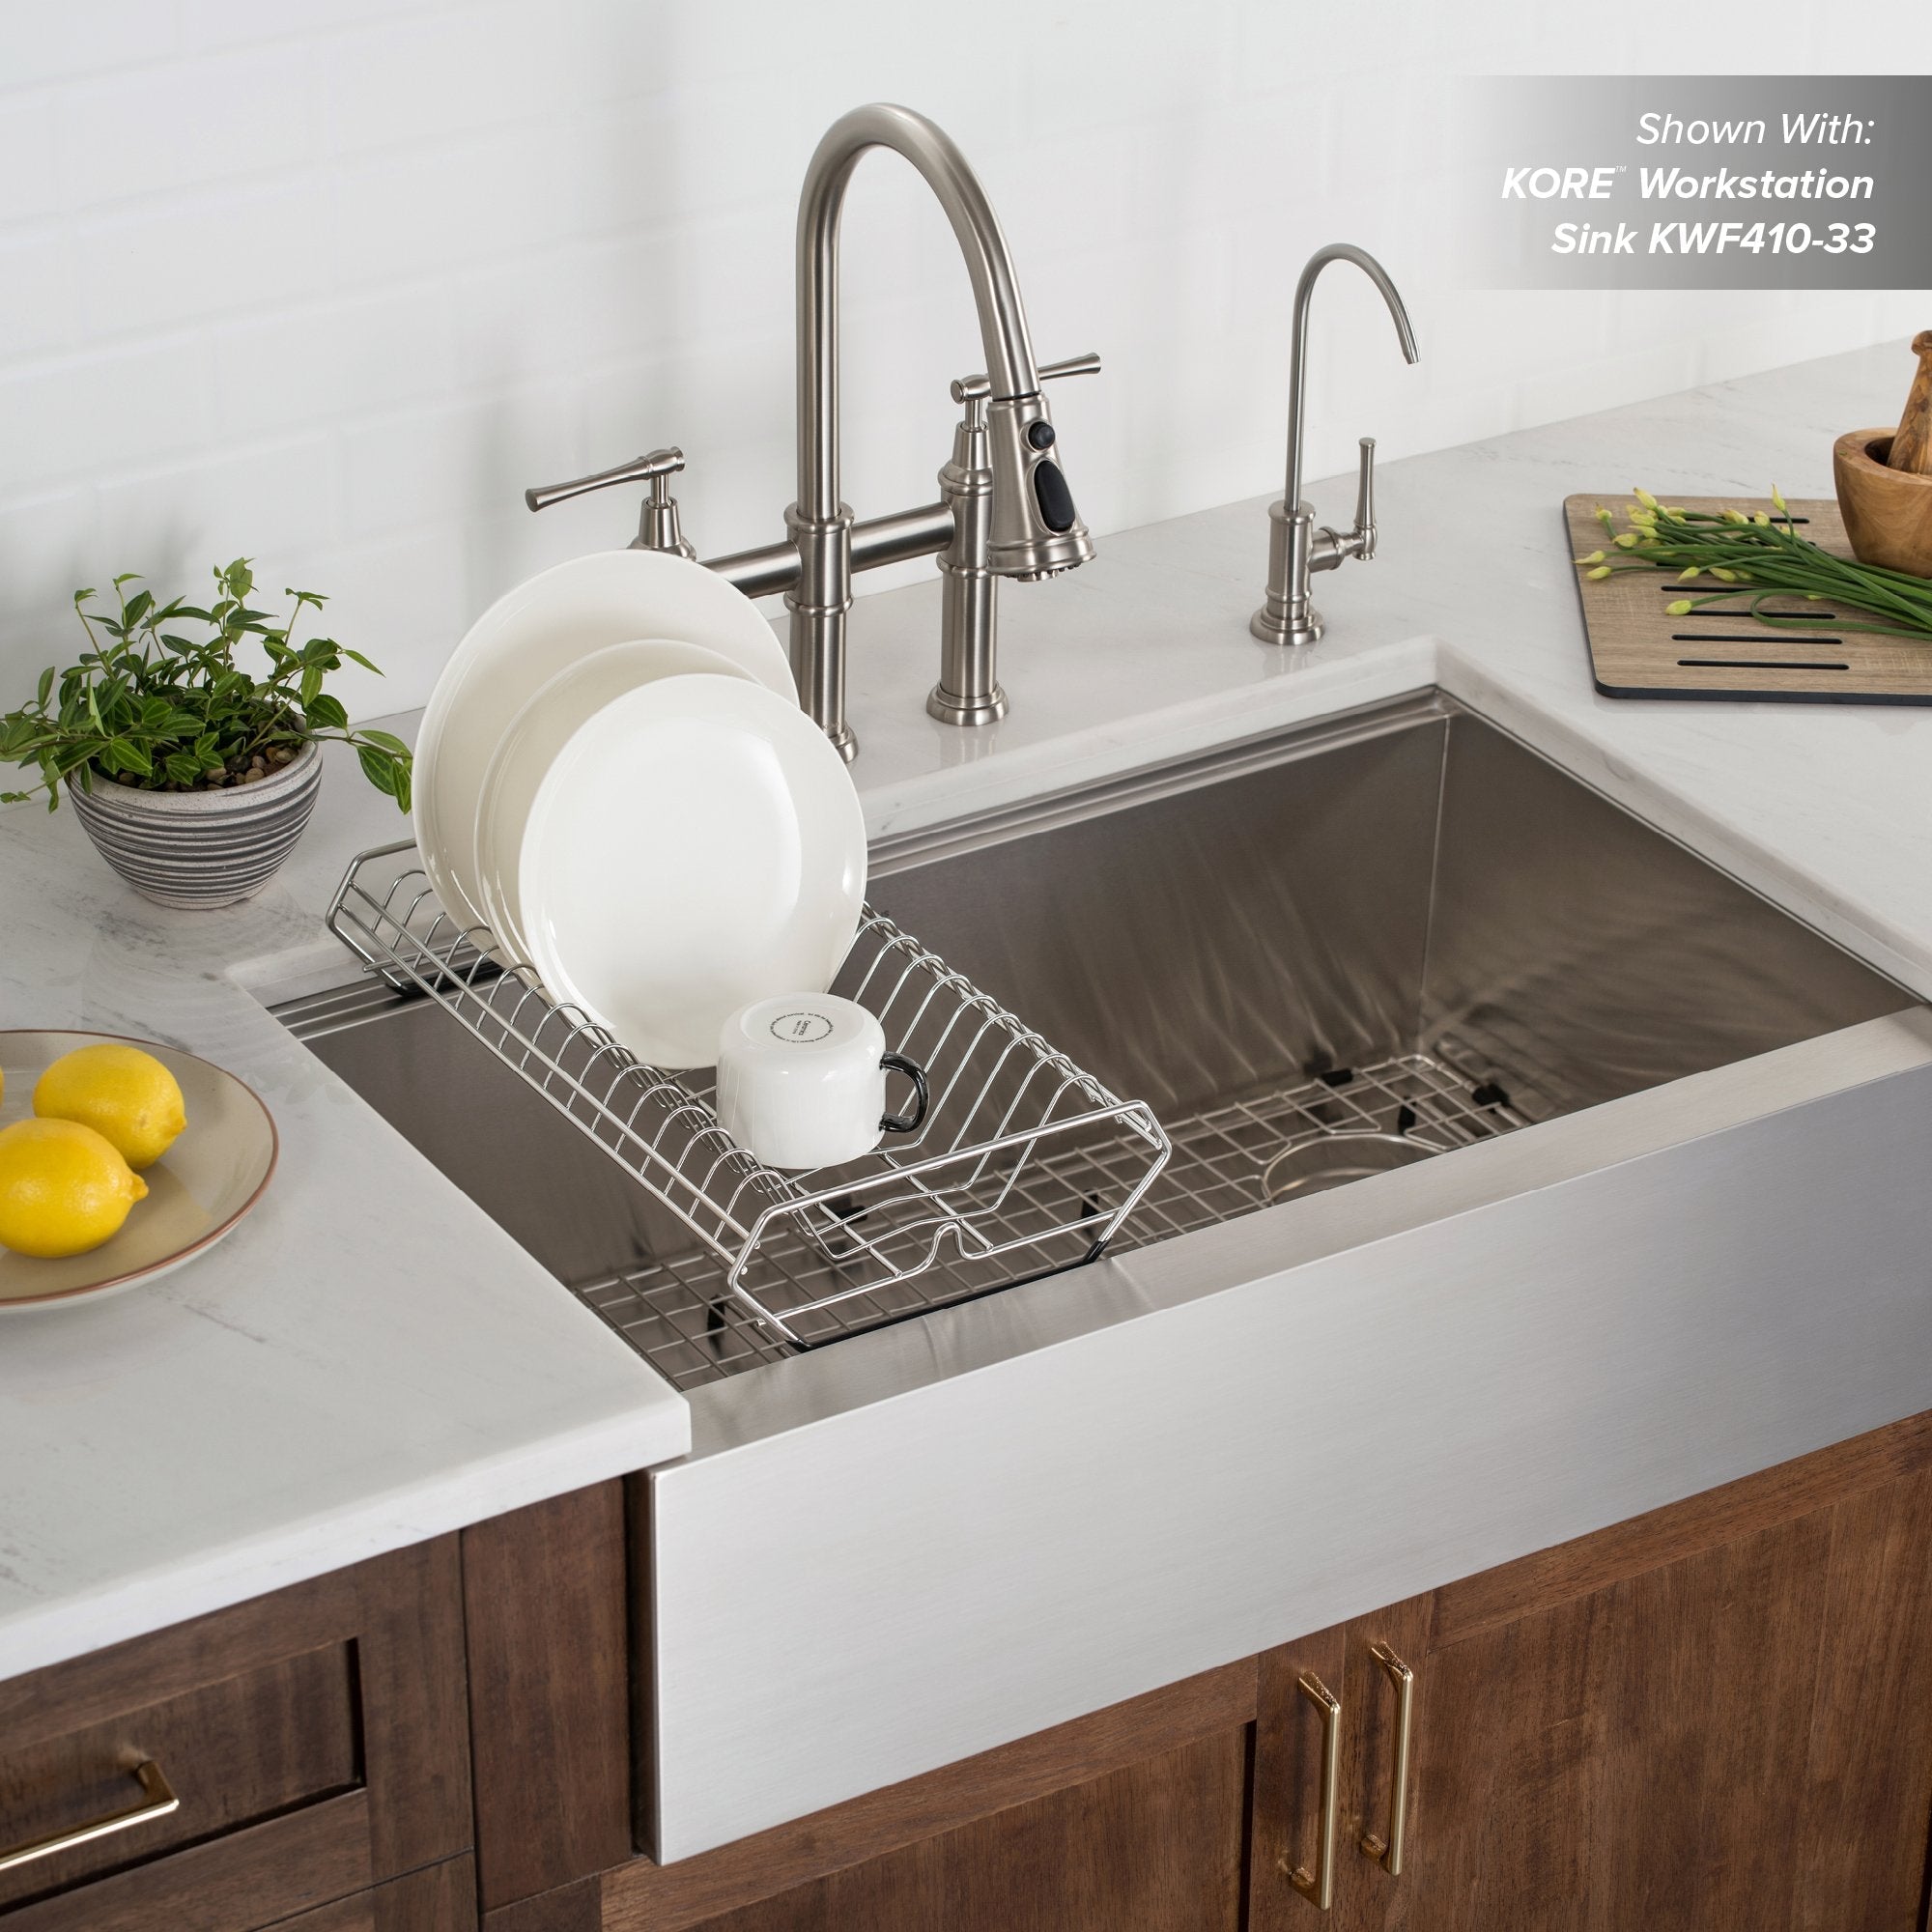 KRAUS Workstation Kitchen Sink Drying Rack in Stainless Steel-Kitchen Accessories-KRAUS